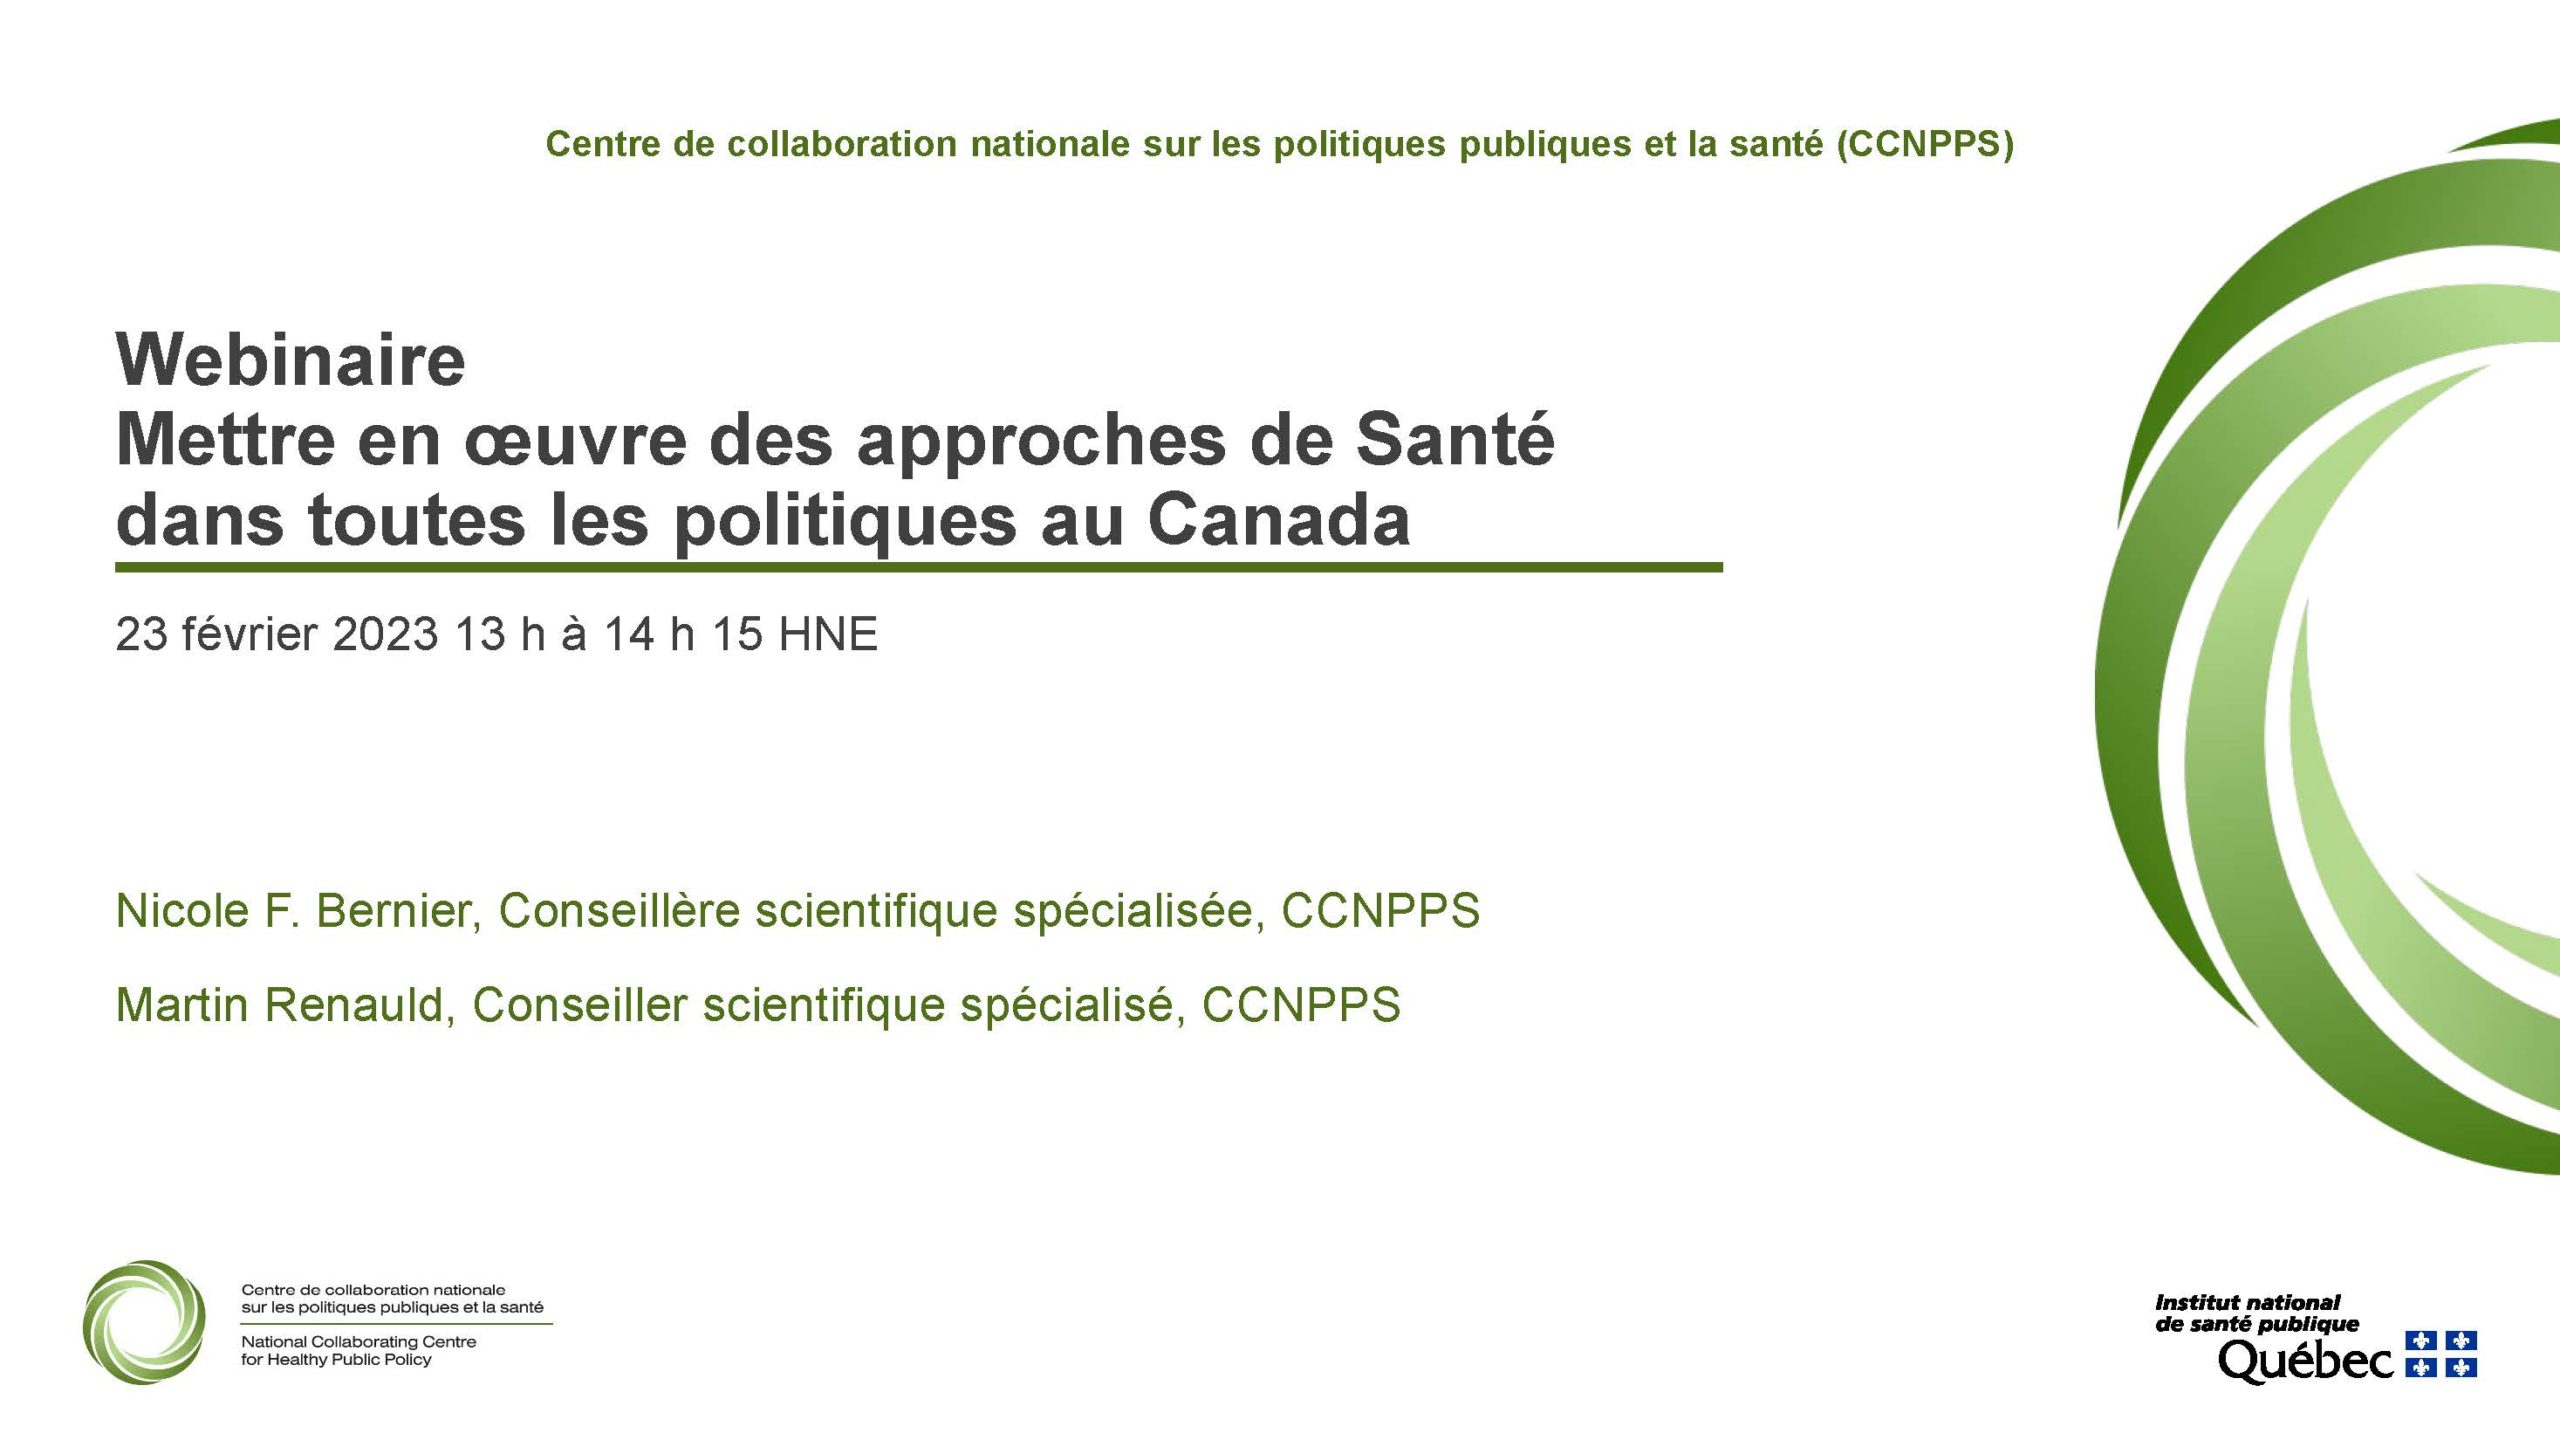 Image de la page couverture de la présentation lors du Webinaire – Mettre en œuvre des approches de Santé dans toutes les politiques au Canada.